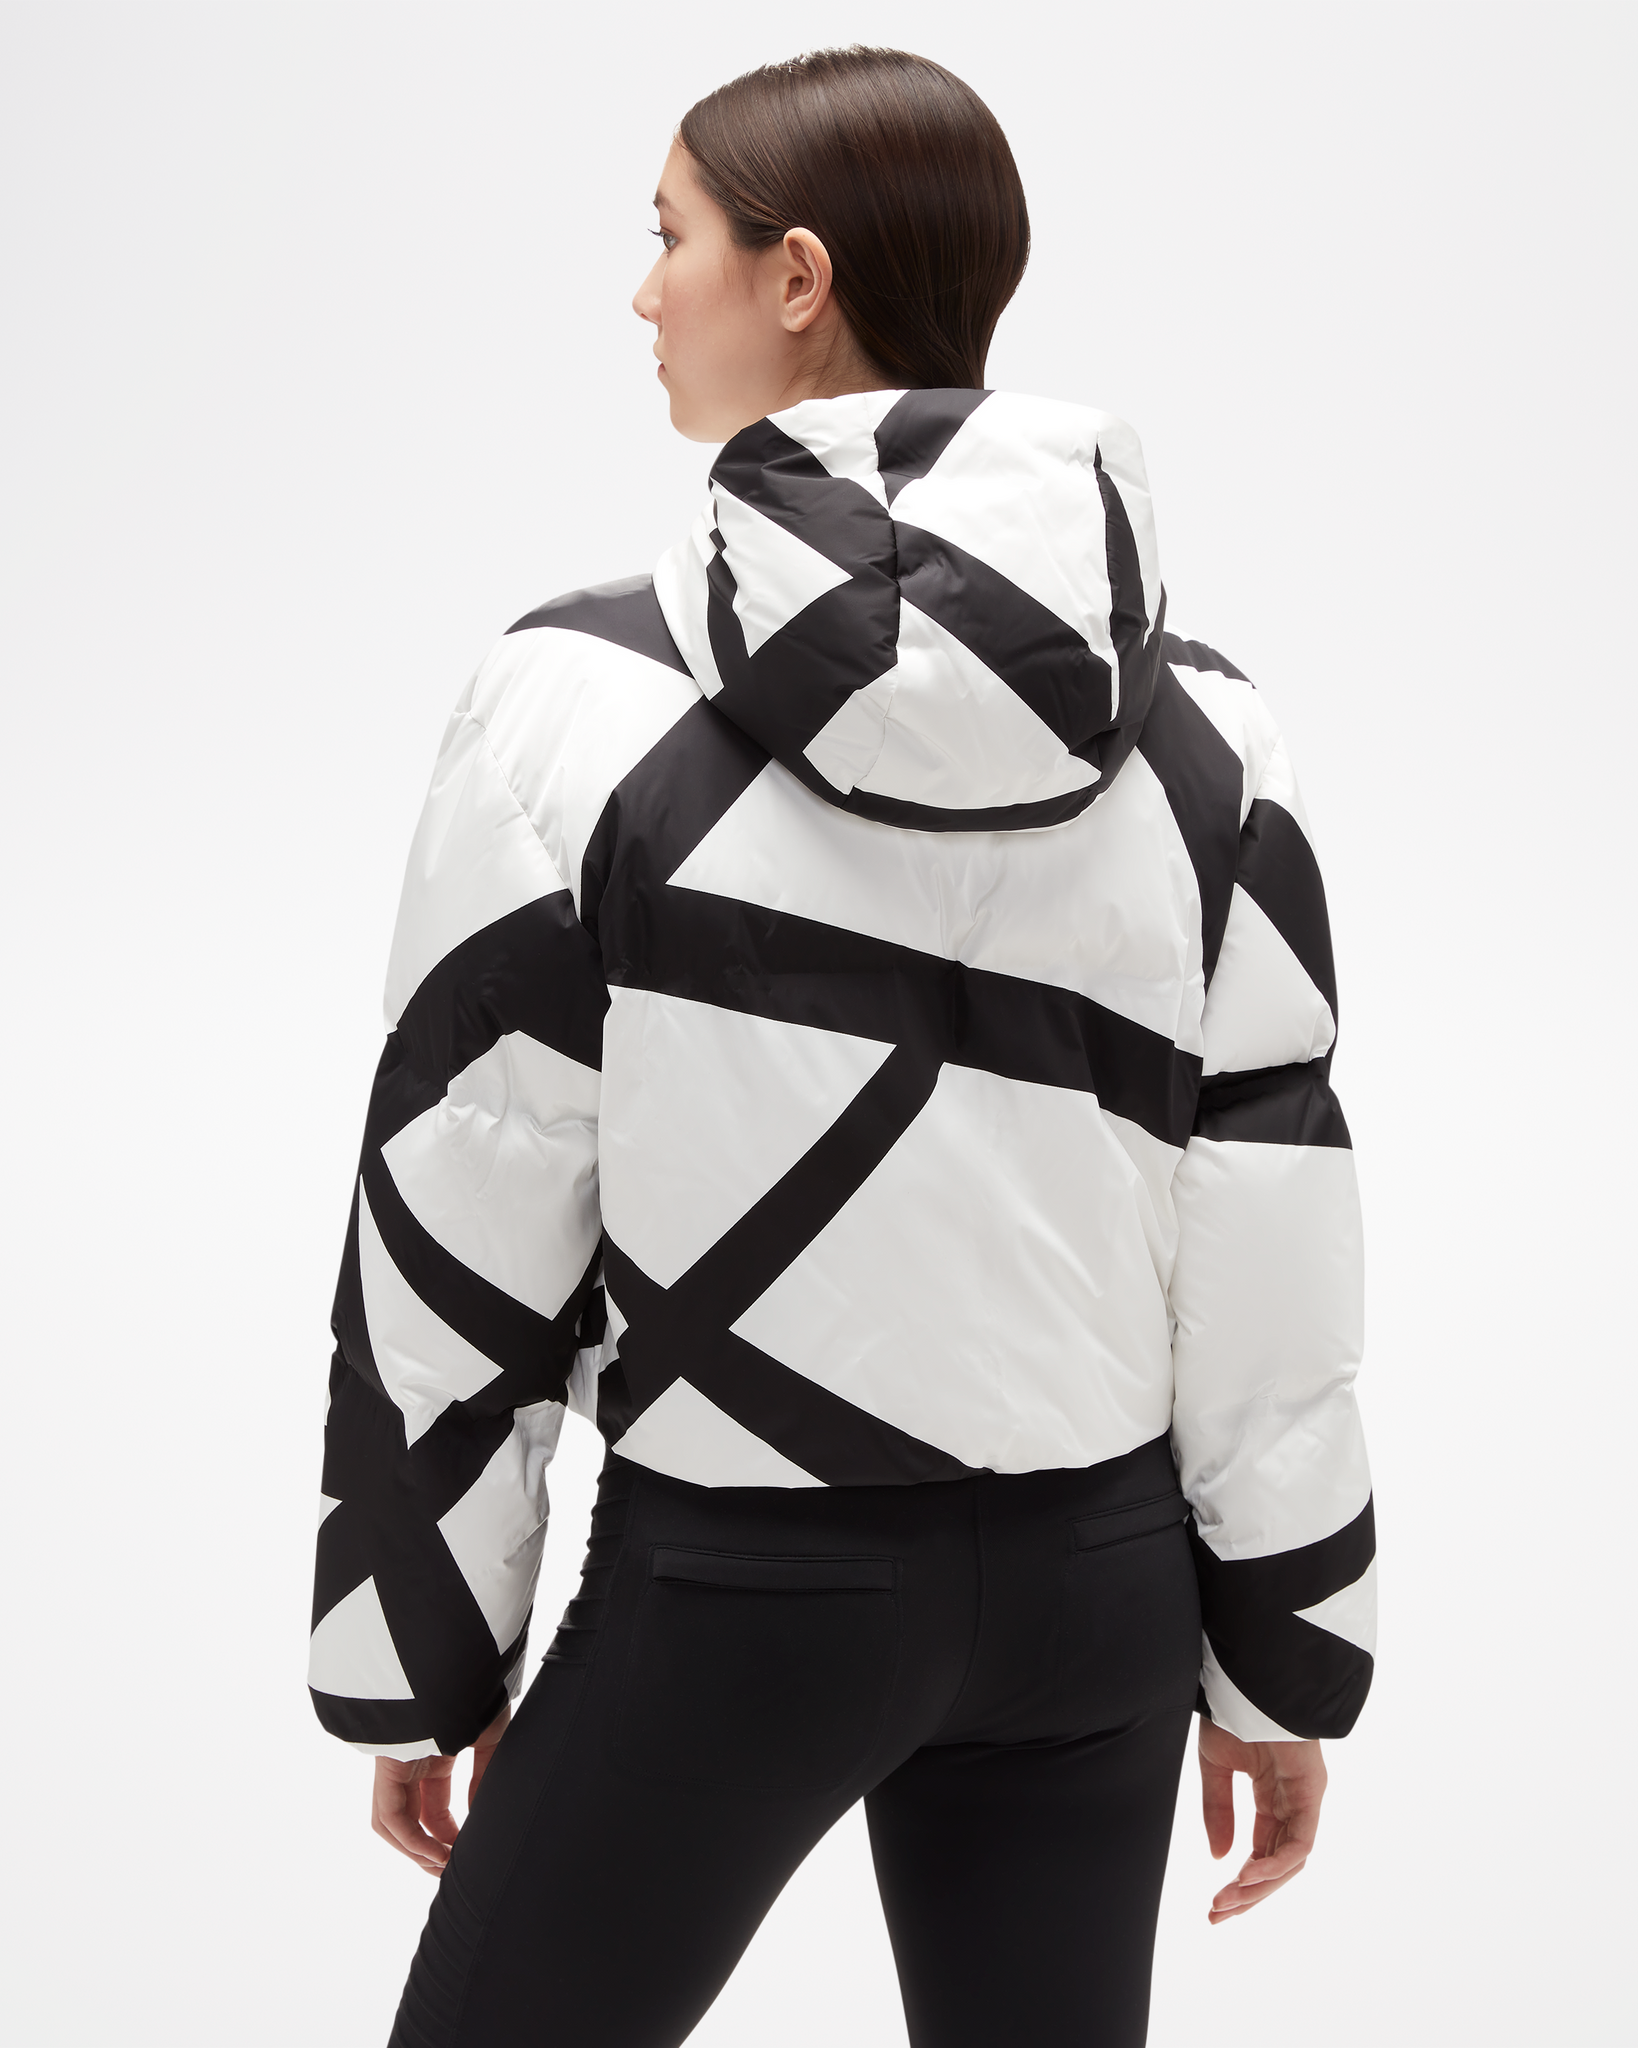 ASPENX | Designer Ski Clothing &